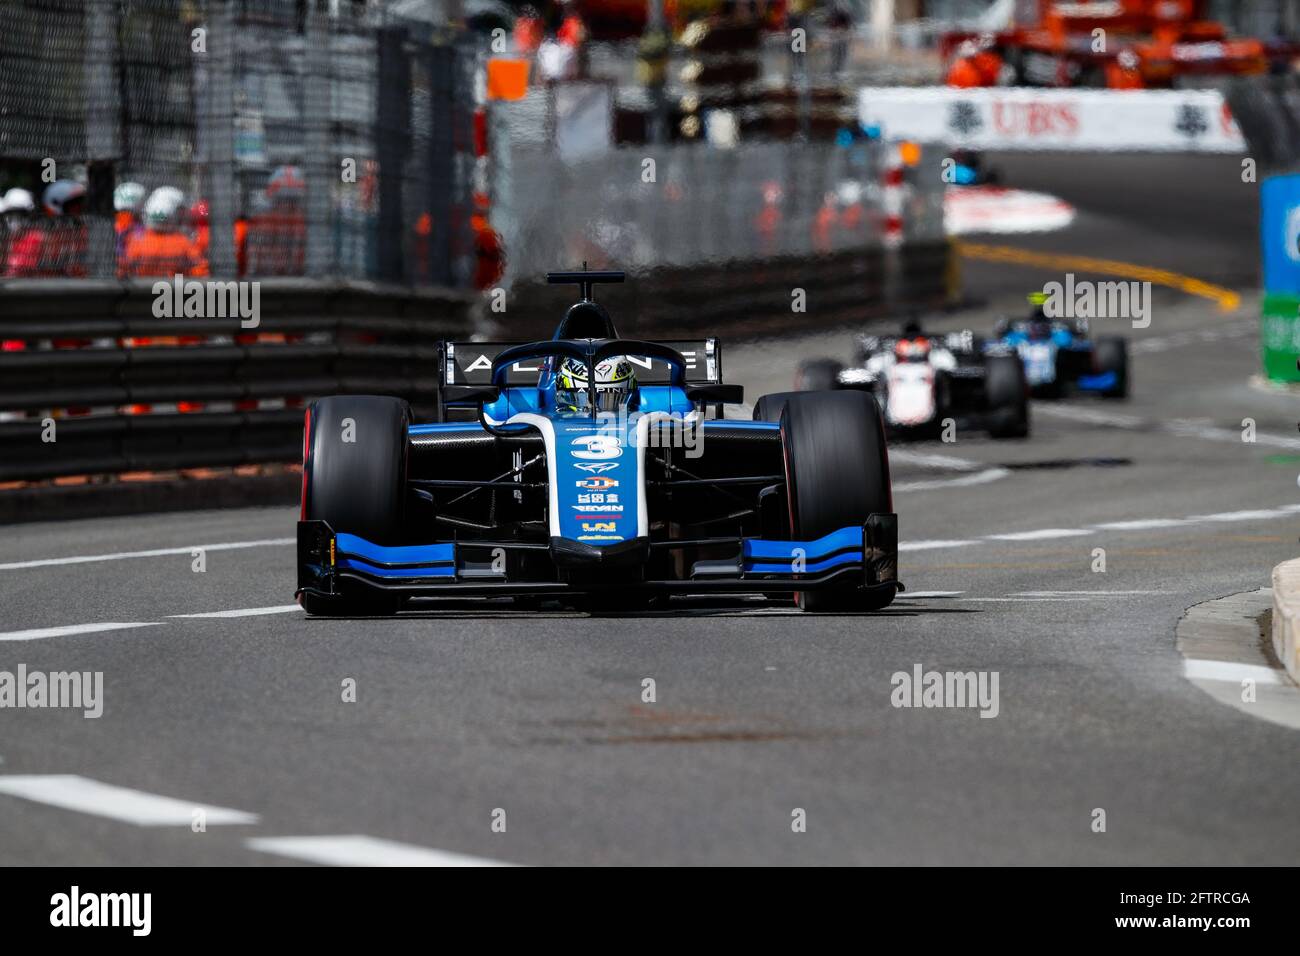 03 Zhou Guanyu (chn), UNI-Virtuosi Racing, Dallara F2, Action während der FIA Formel 2-Meisterschaft 2021 in Monaco vom 21. Bis 23. Mai - Foto Florent Gooden / DPPI Stockfoto